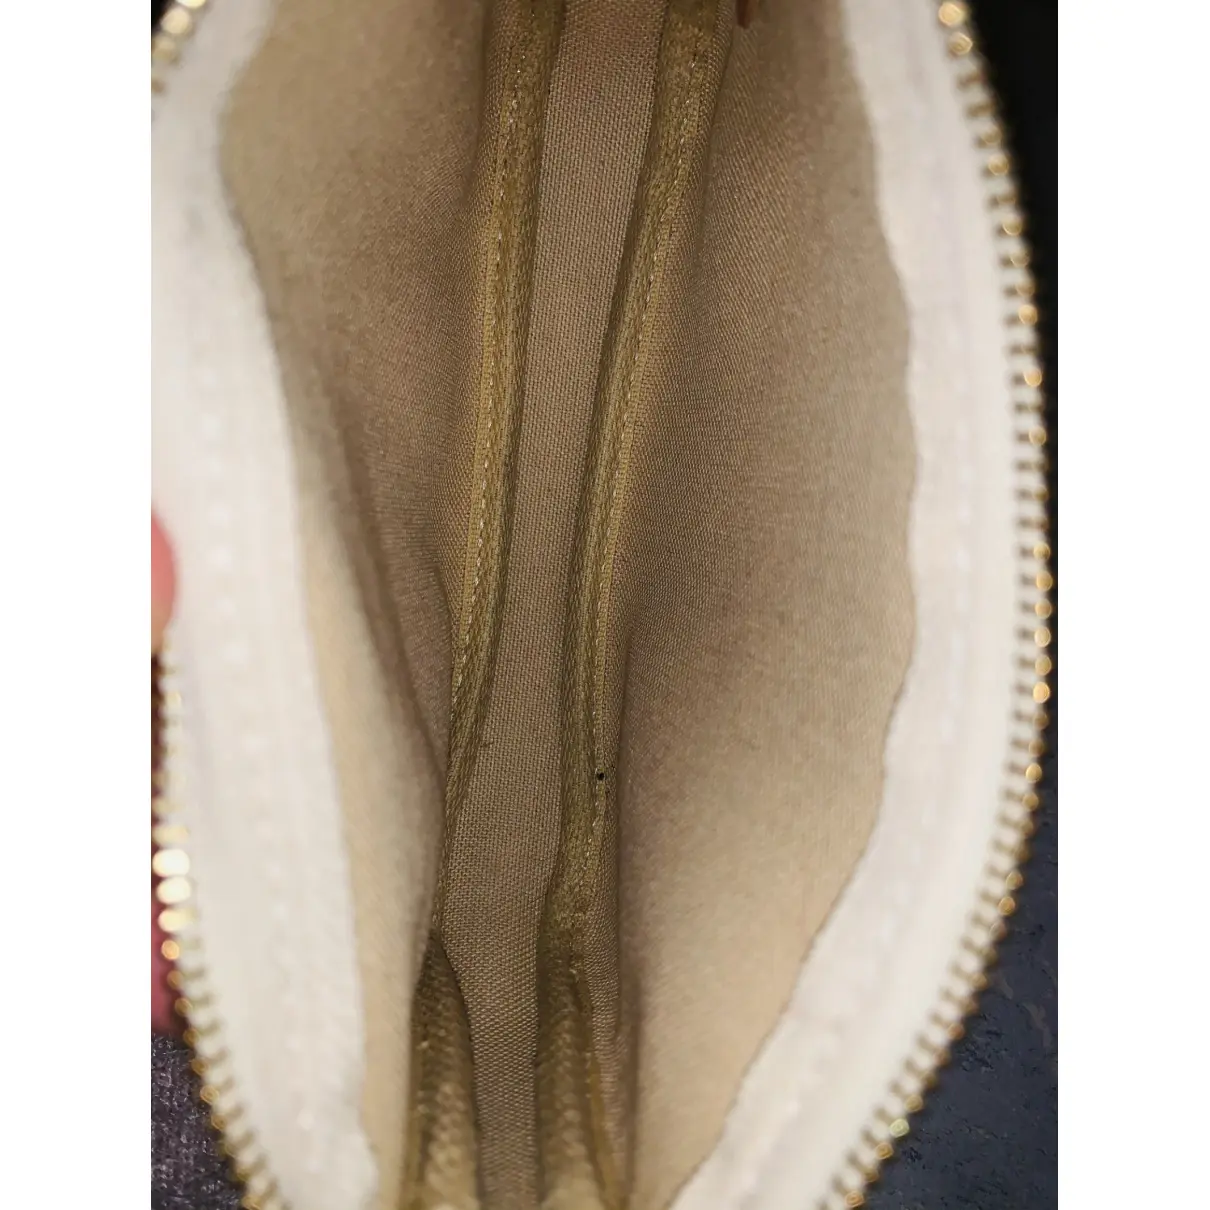 Pochette Accessoire leather handbag Louis Vuitton